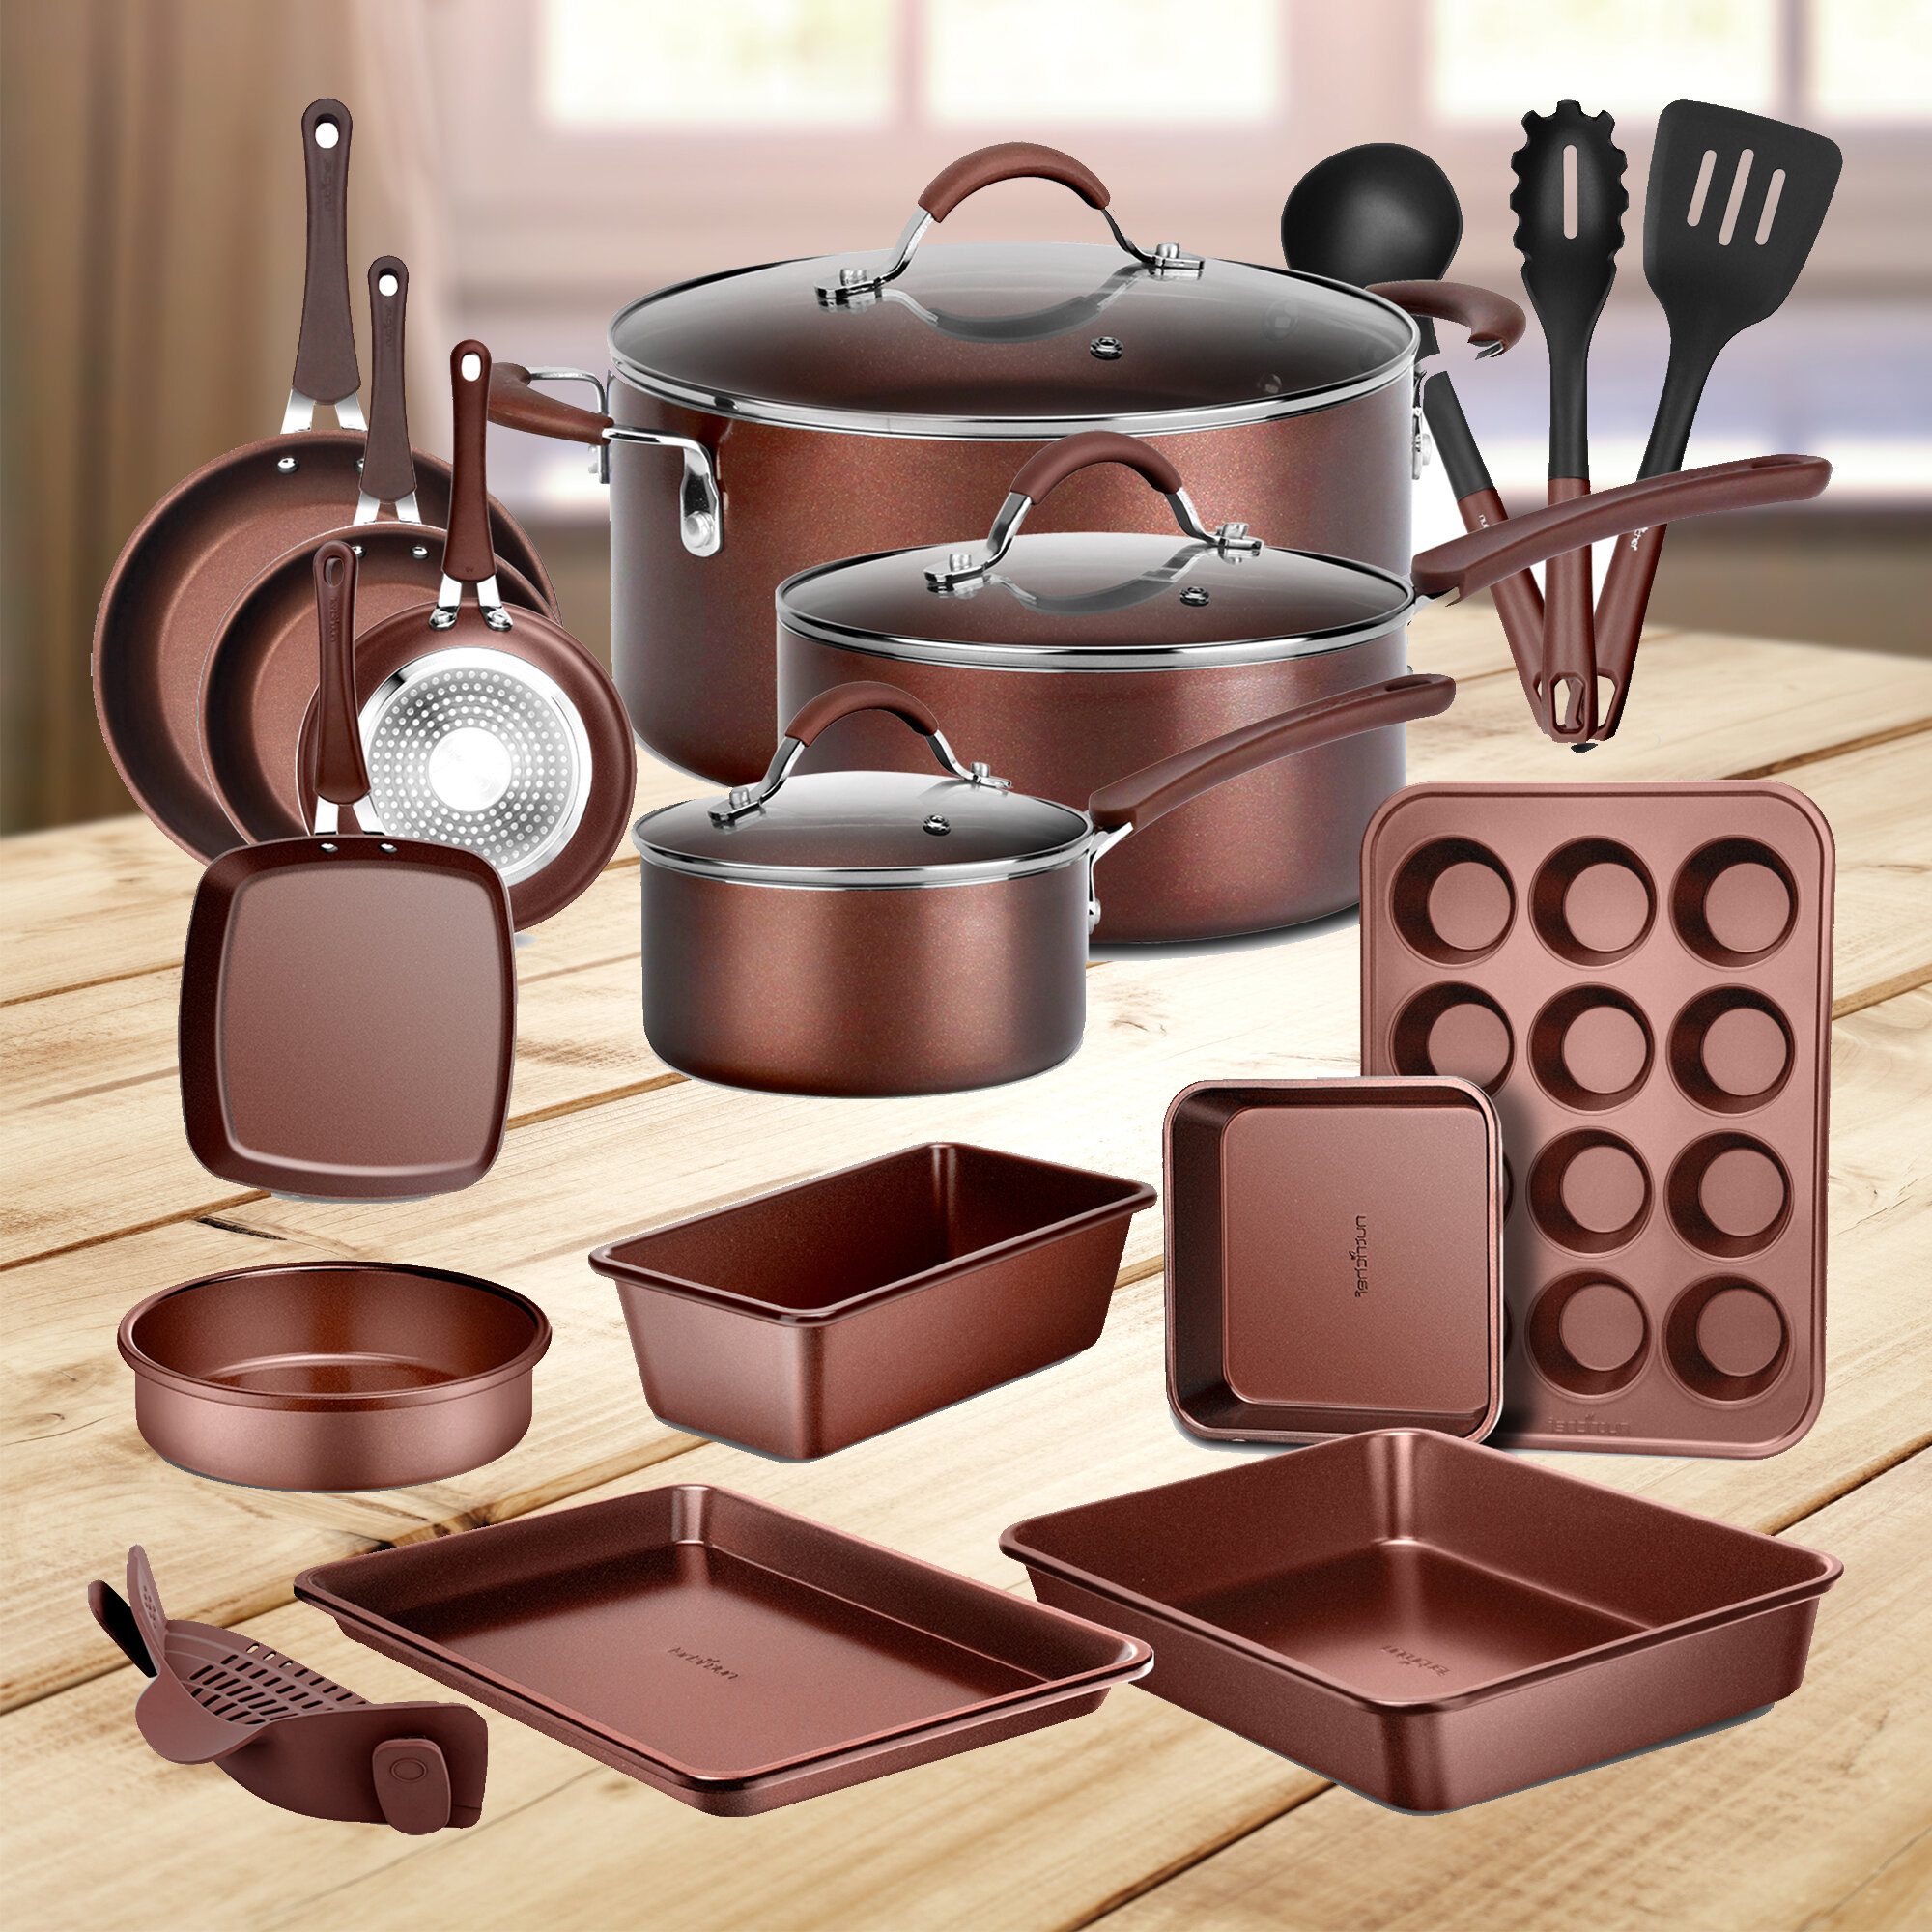 https://assets.wfcdn.com/im/73183229/compr-r85/1936/193664590/20-piece-non-stick-aluminum-cookware-set.jpg